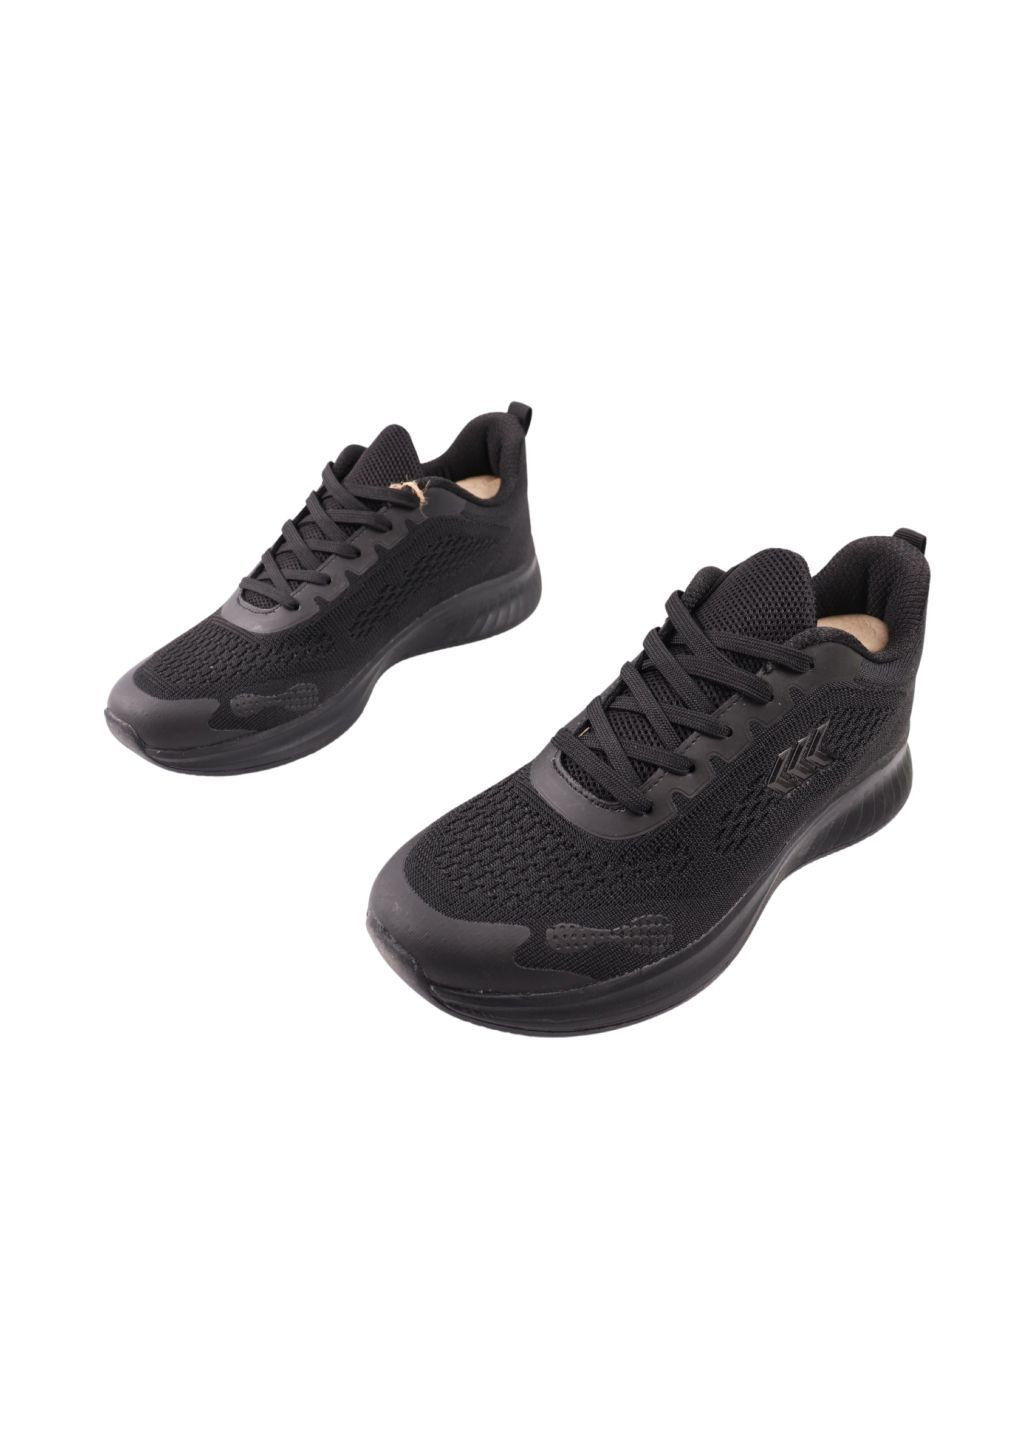 Черные кроссовки мужские черные текстиль Restime 253-24LK